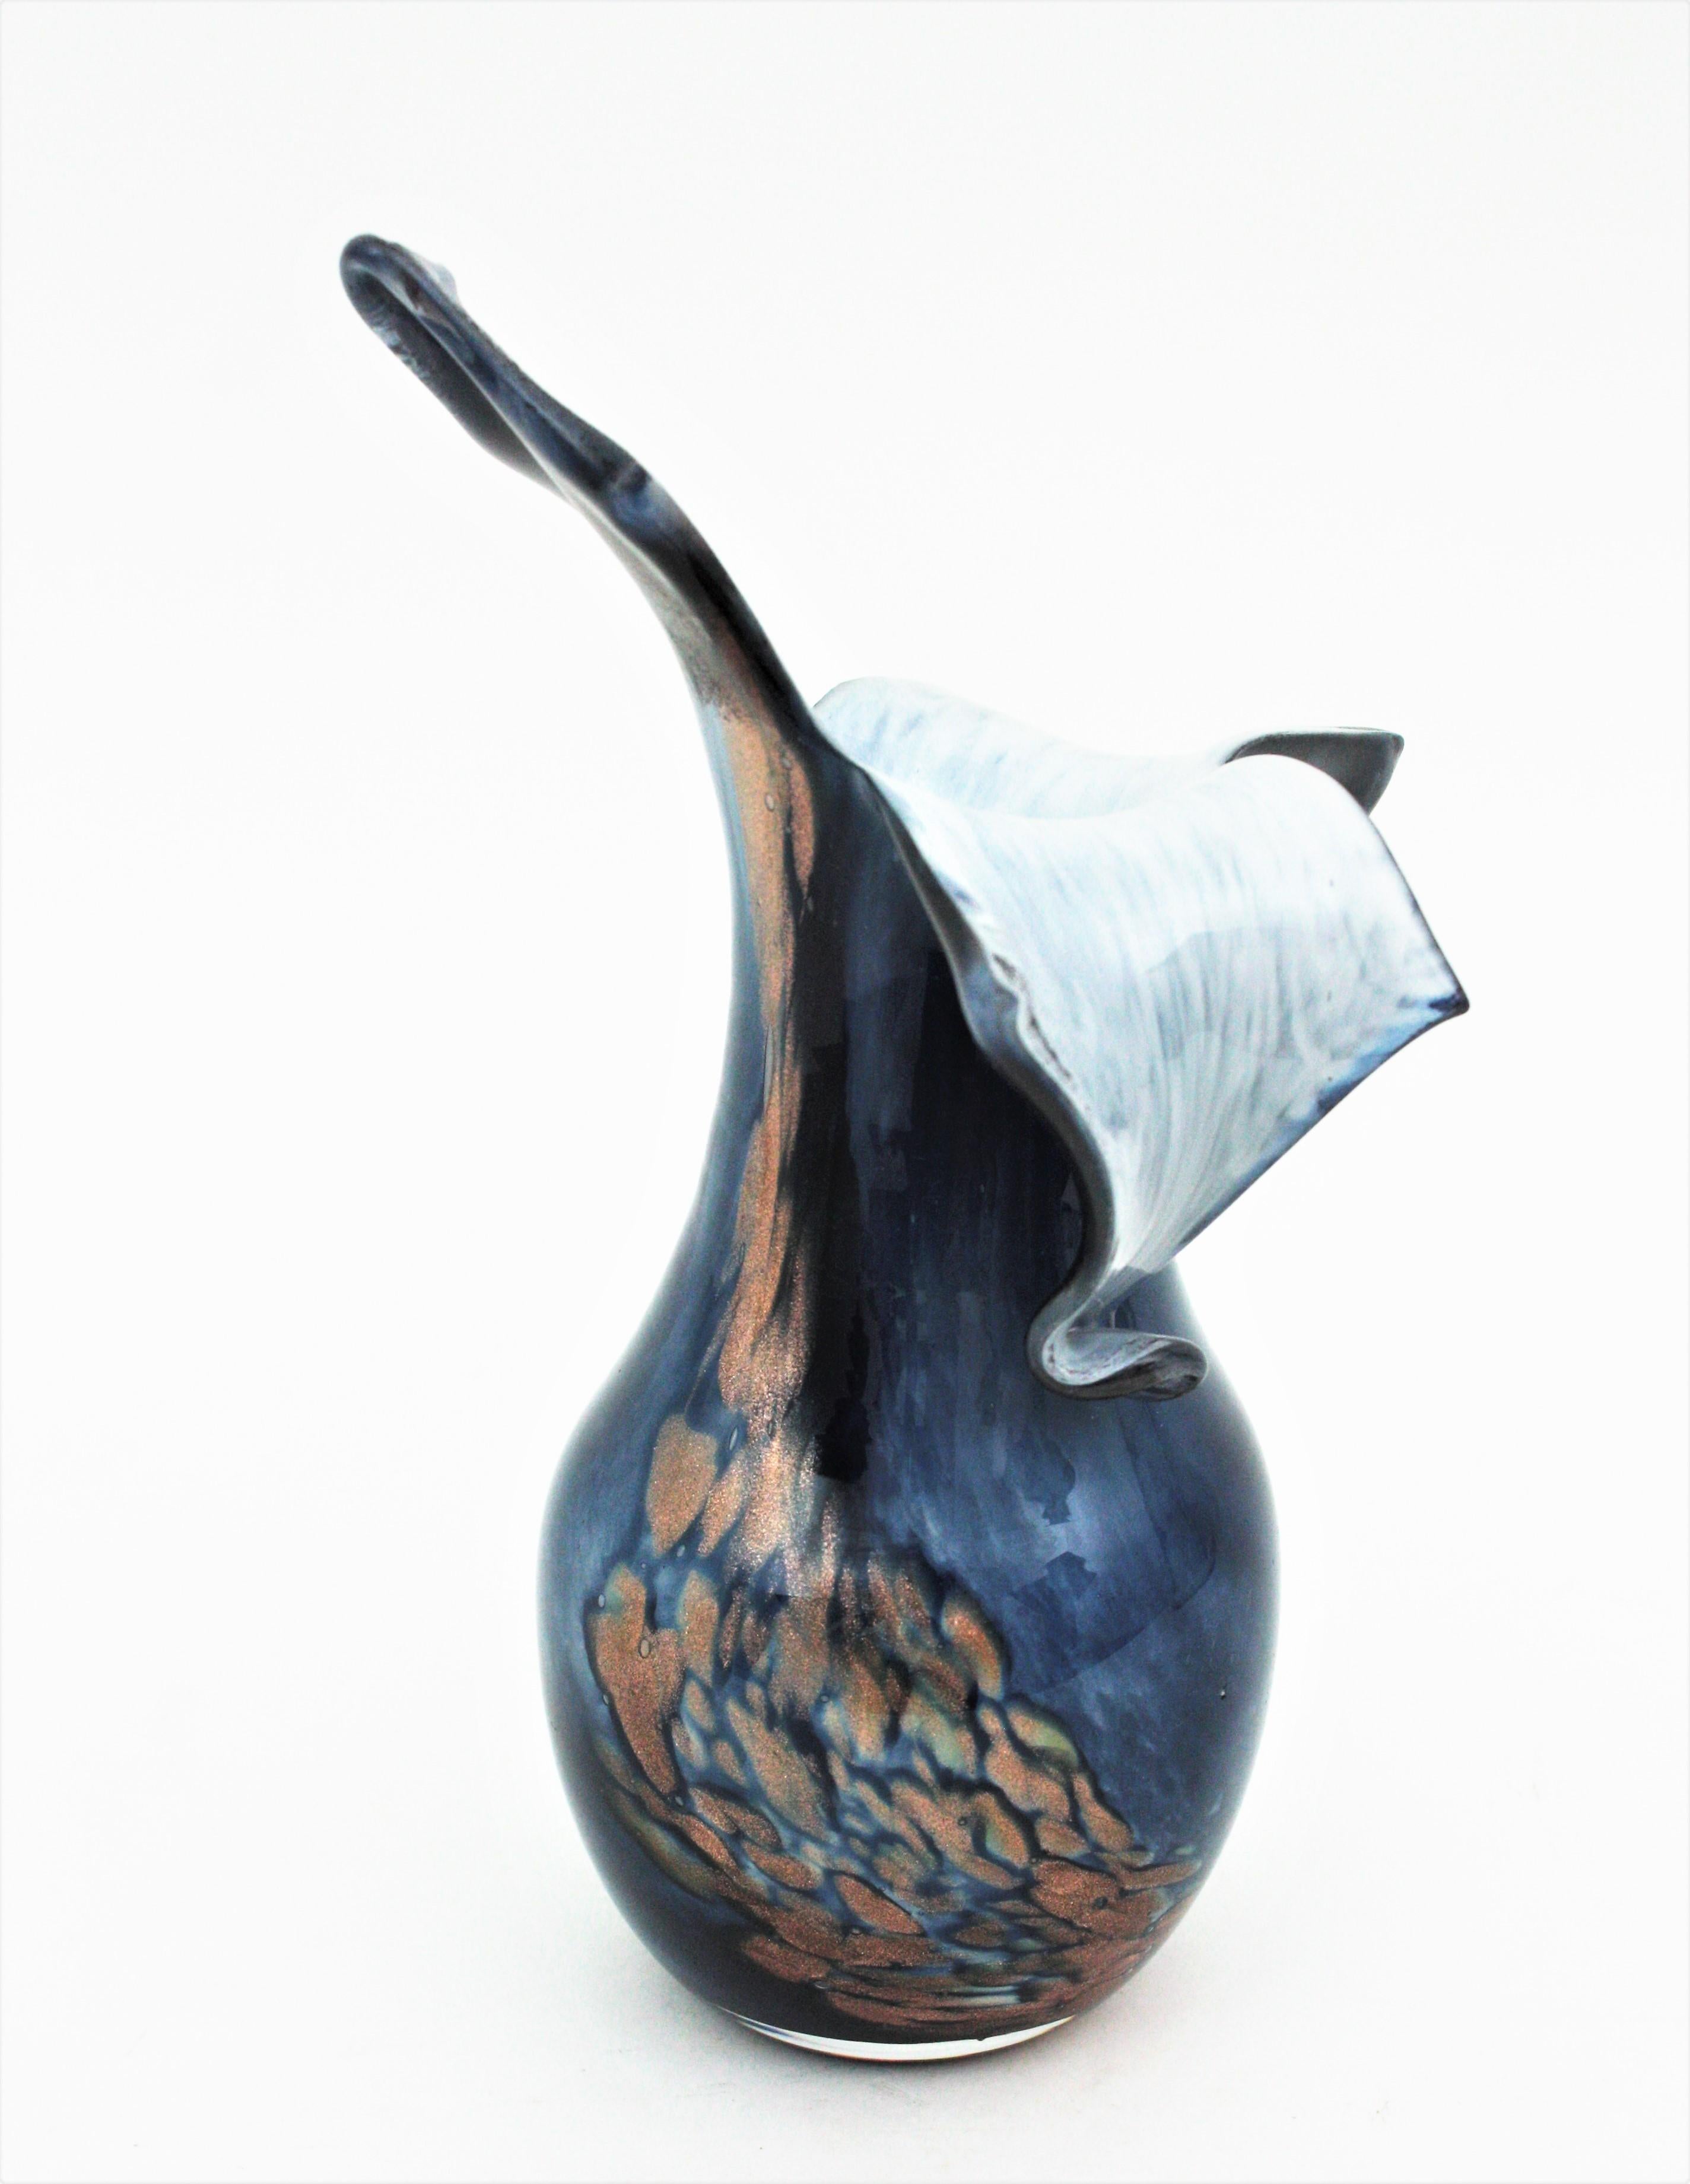 Joli vase en verre d'art soufflé à la main avec des mouchetures d'aventurine en cuivre. Italie, années 1960
Design/One en verre bleu sur verre blanc tacheté de mouchetures d'aventurine cuivrée.
Un sommet qui attire l'attention, dans une forme libre